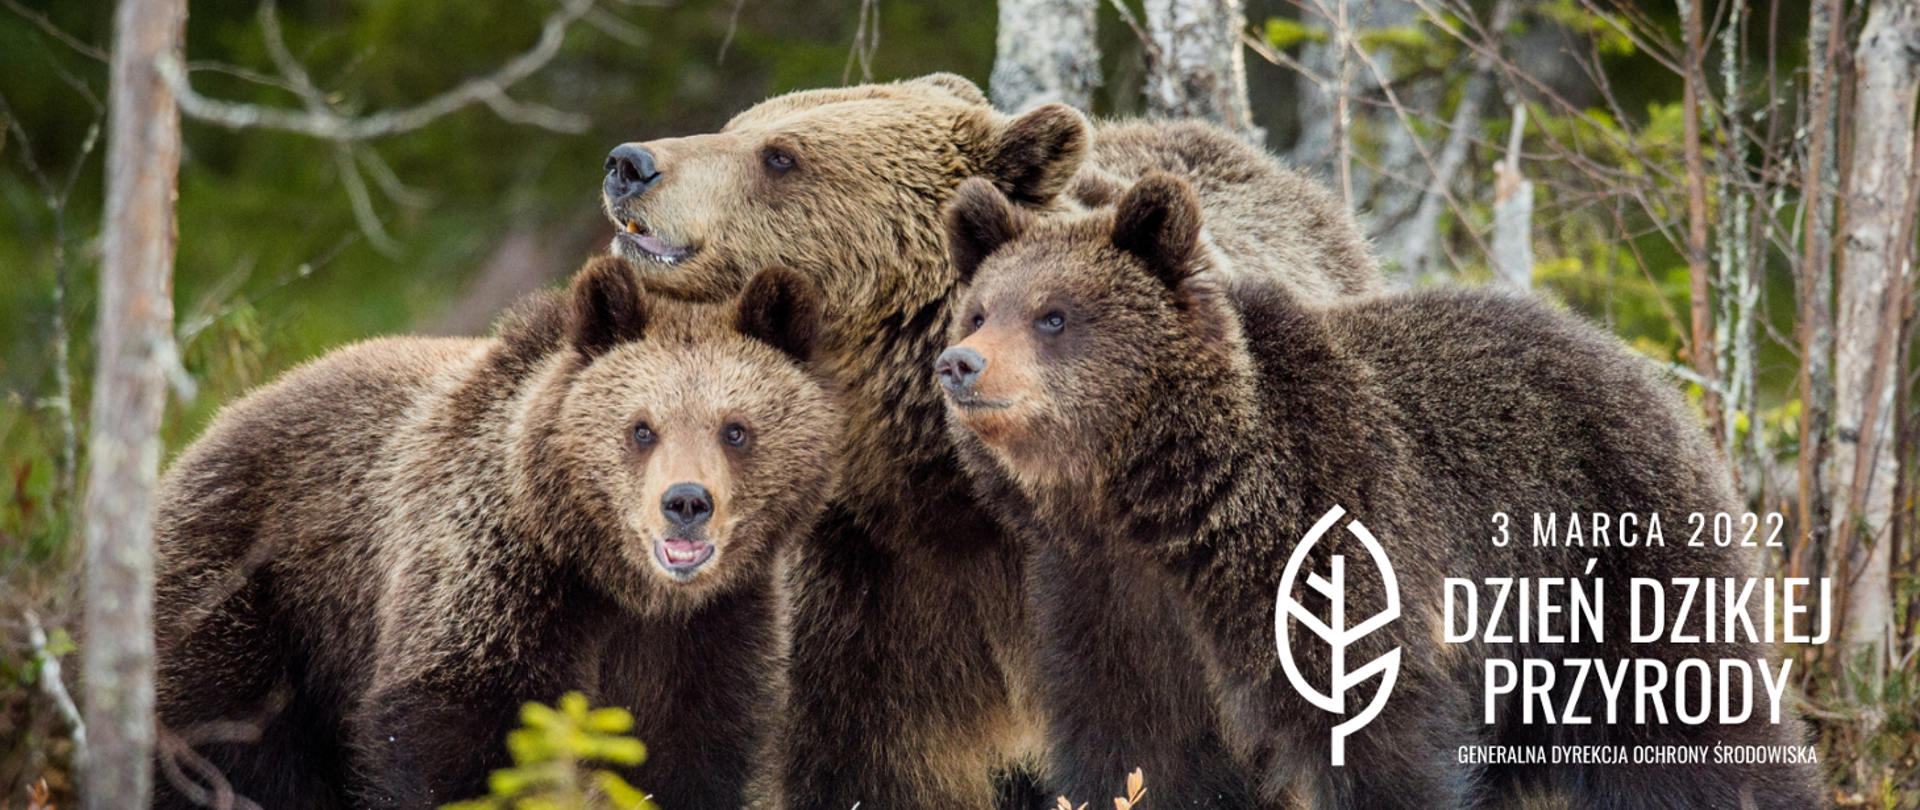 Na zdjęciu widać trzy niedźwiedzie. Na dole z prawej strony napis: "3 marca 2022 Dzień Dzikiej Przyrody Generalna Dyrekcja Ochrony Środowiska".